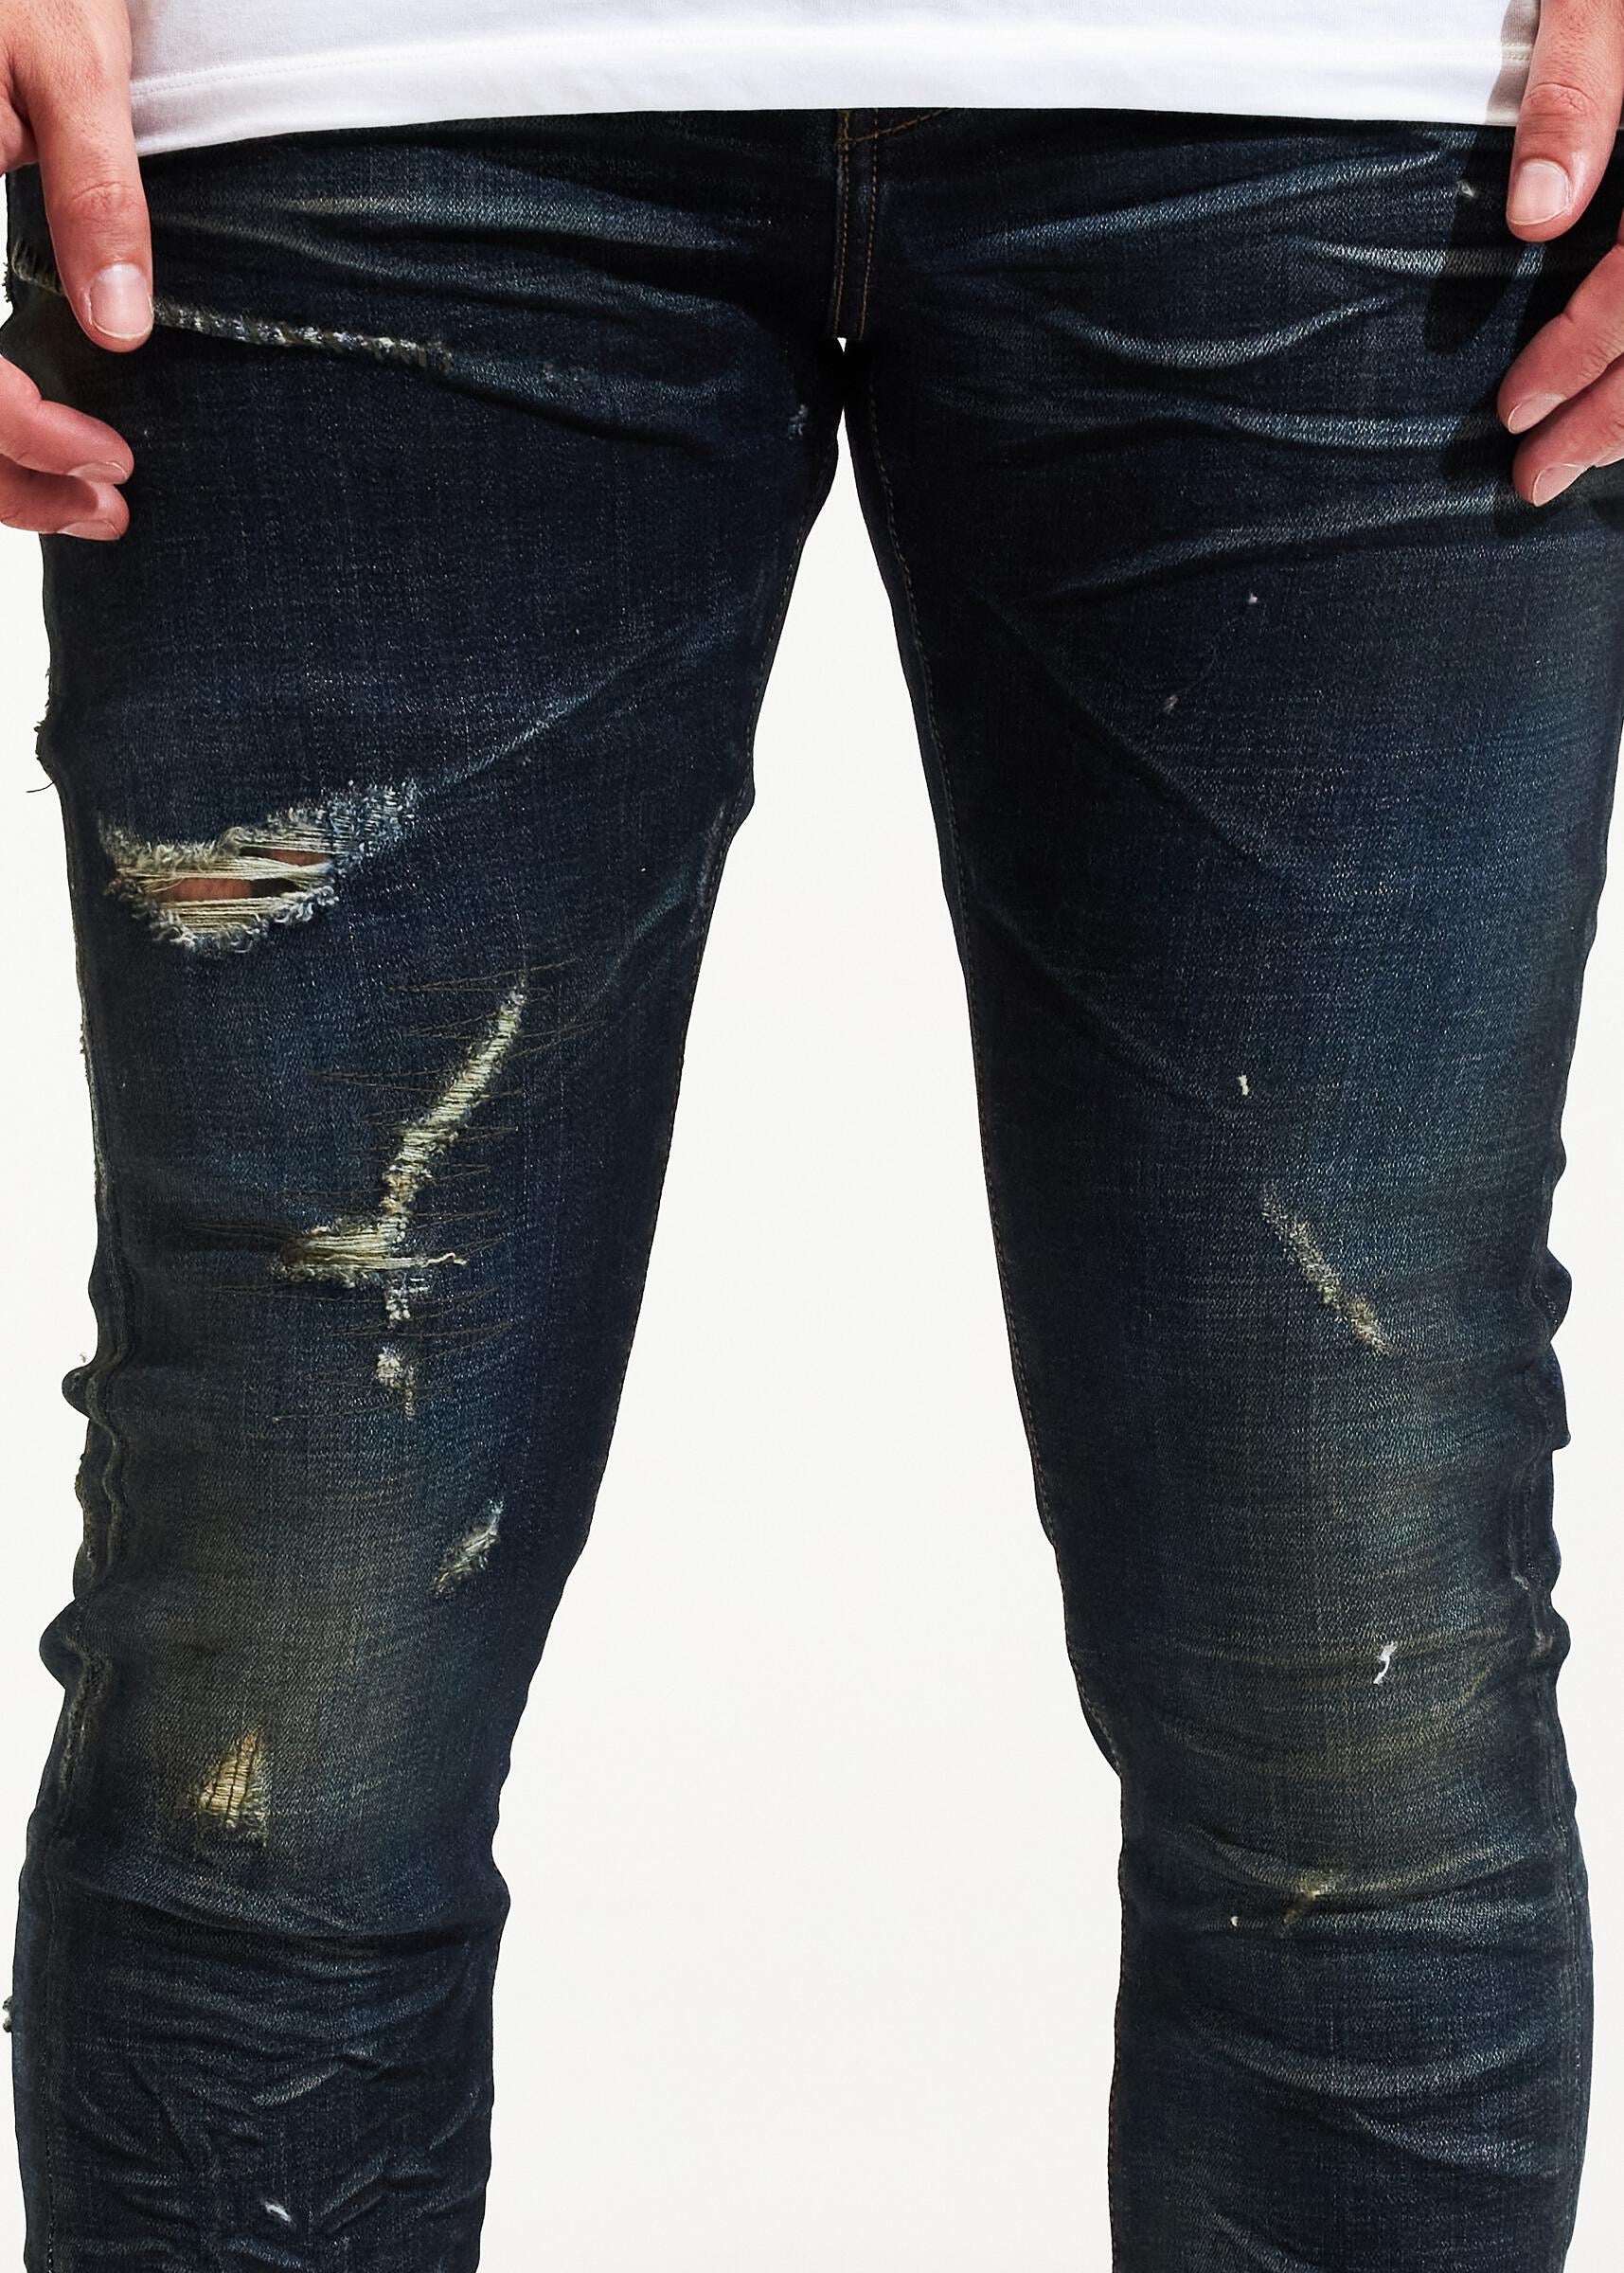 Crysp Denim Jeans - Atlantic - Indigo